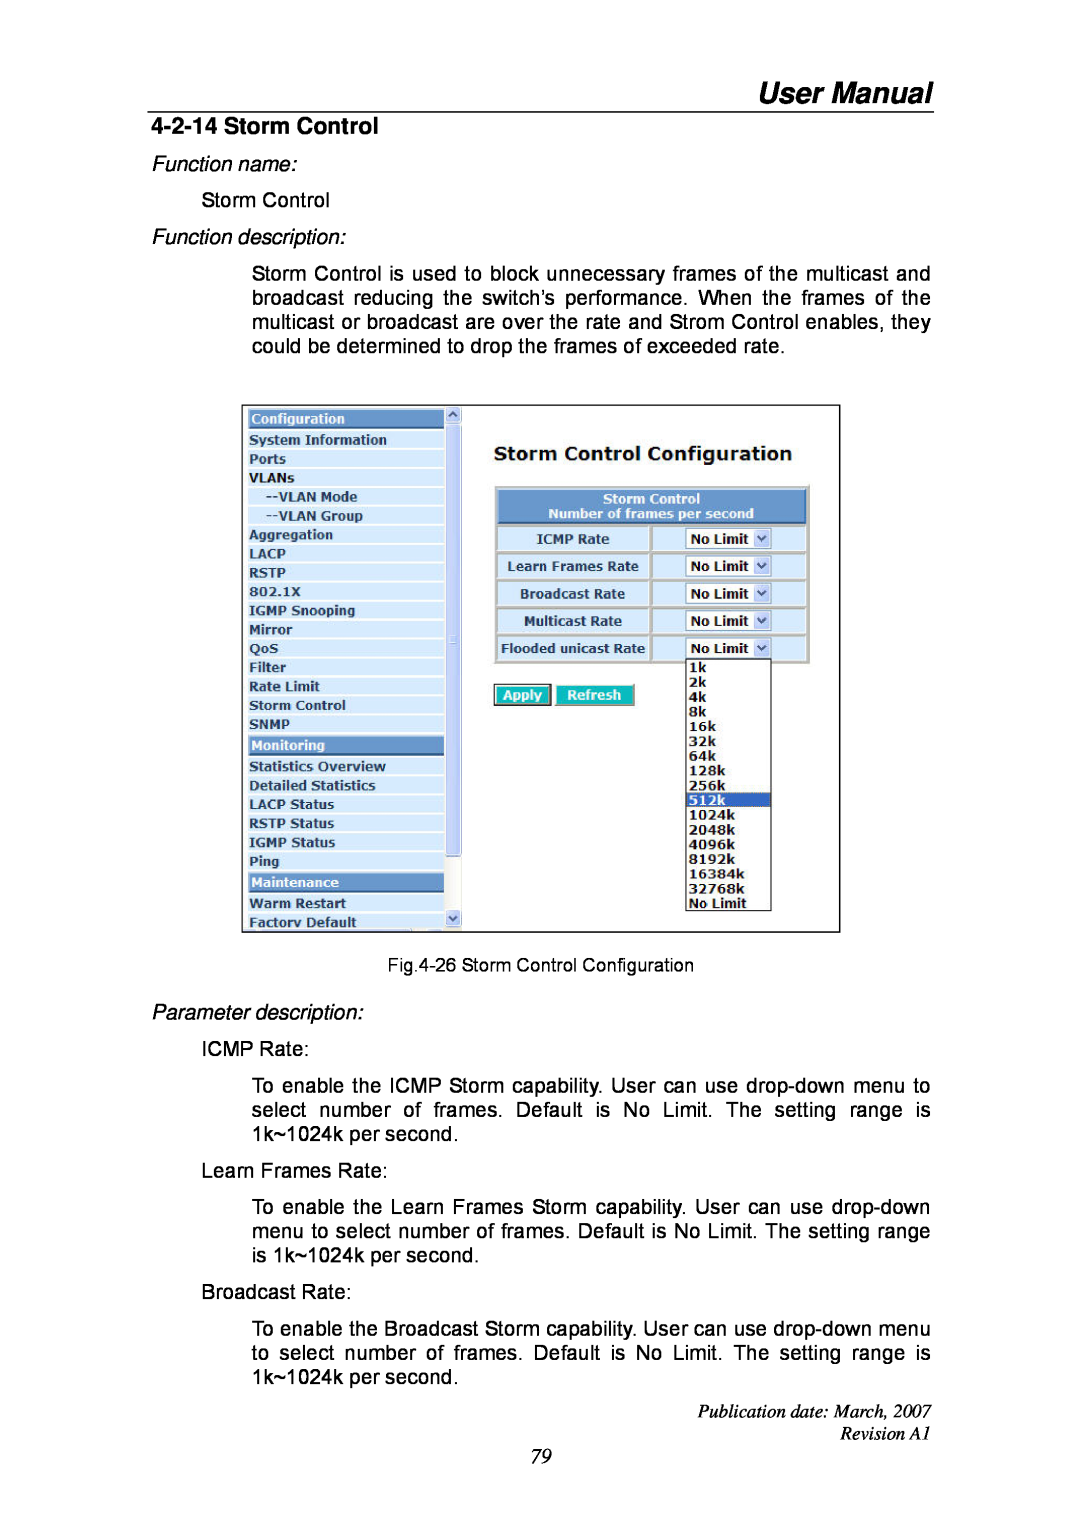 Ruby Tech GS-1224L manual Storm Control, User Manual, Function name, Function description, Parameter description 